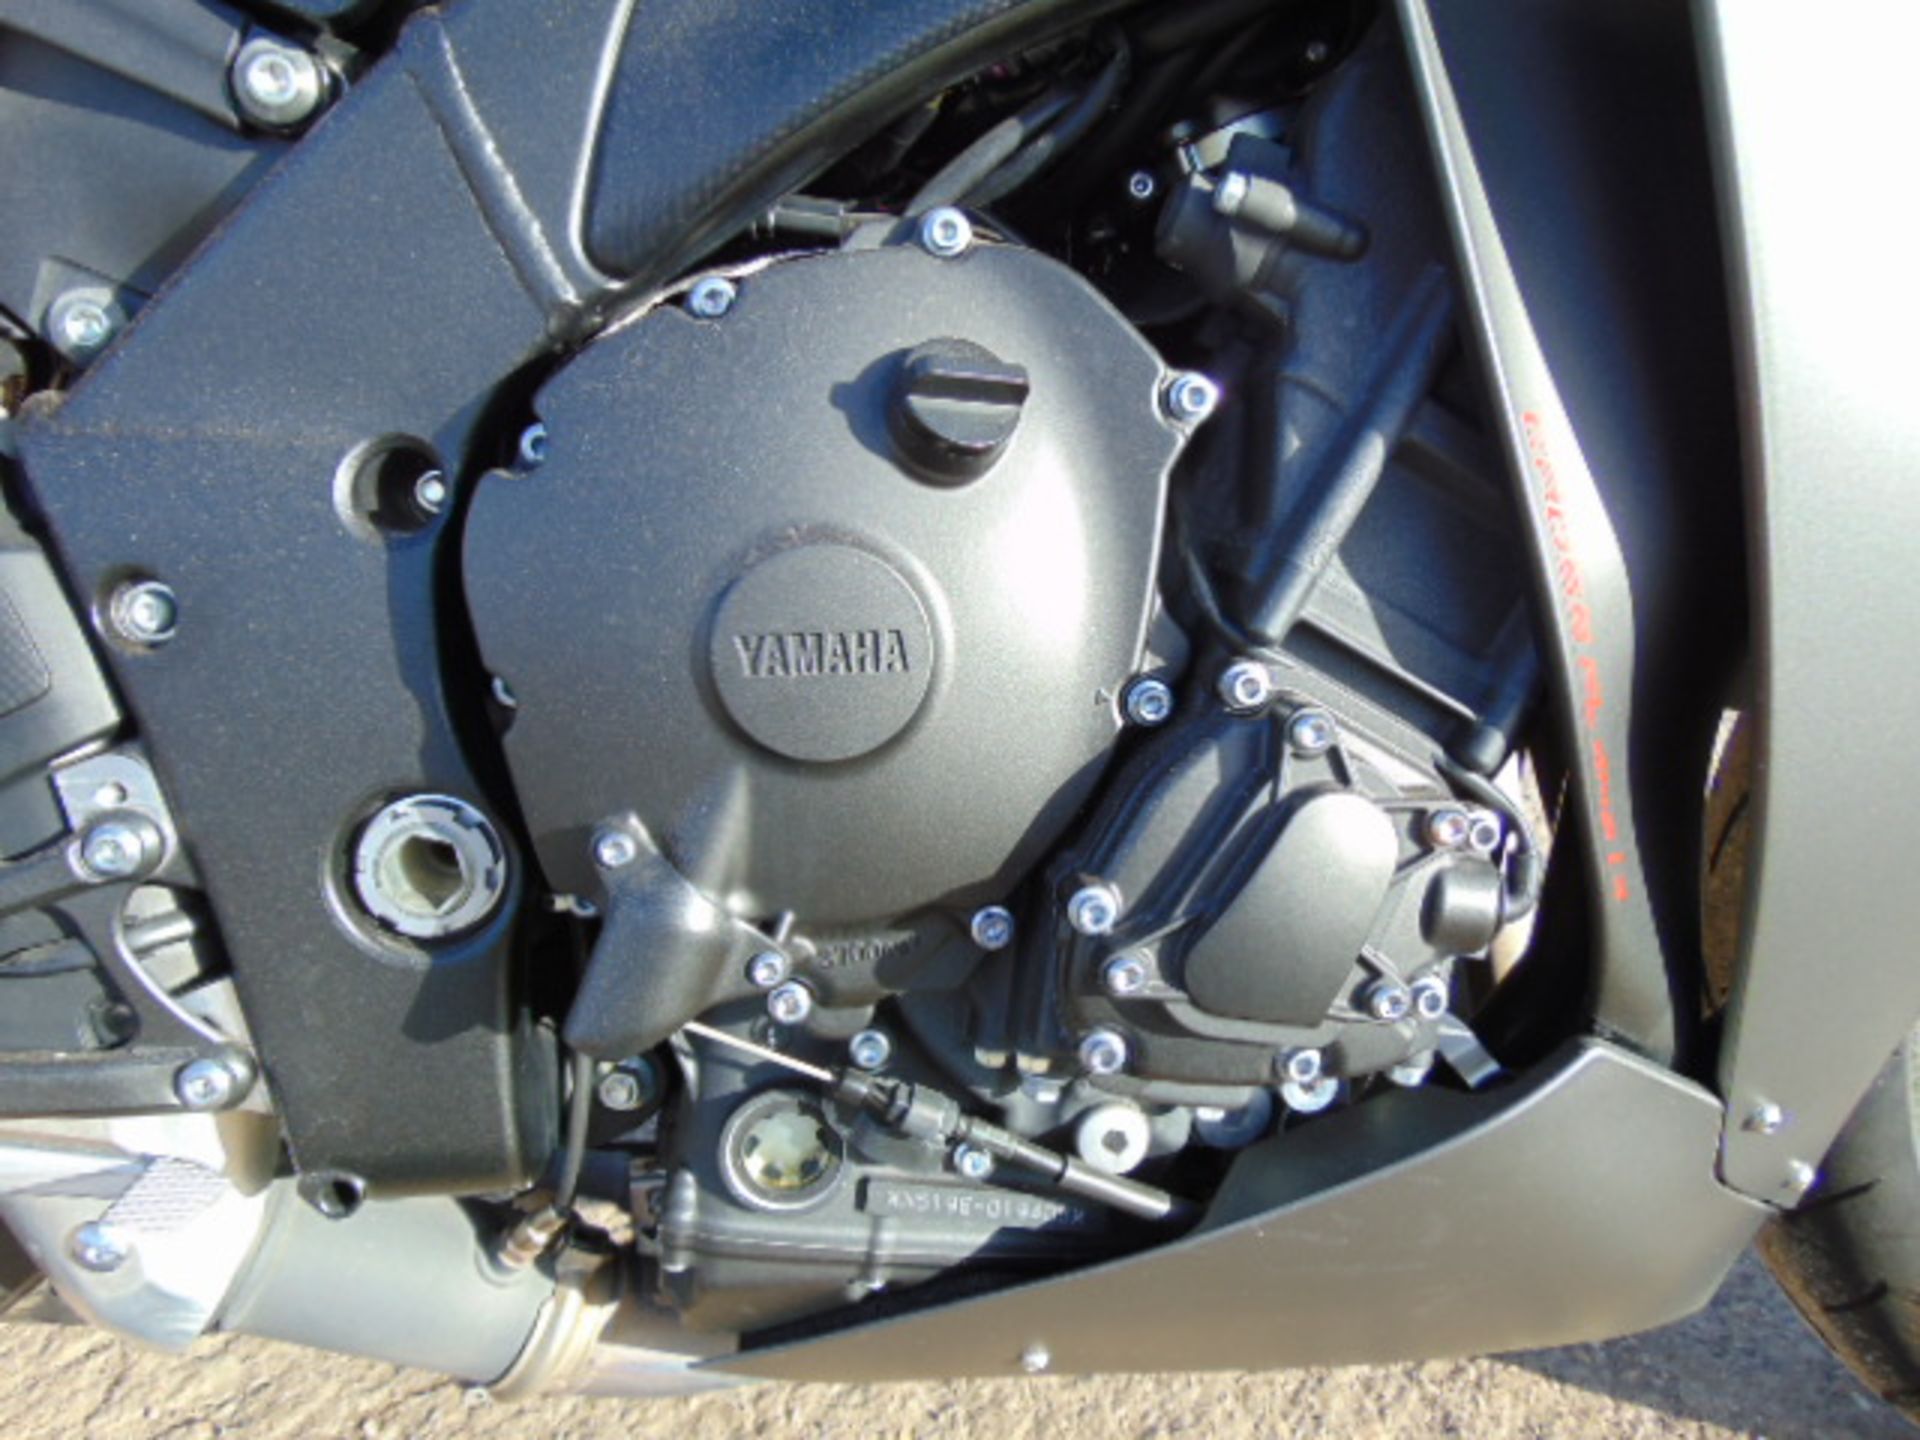 2013 Yamaha YZF-R1 Superbike - Image 23 of 27